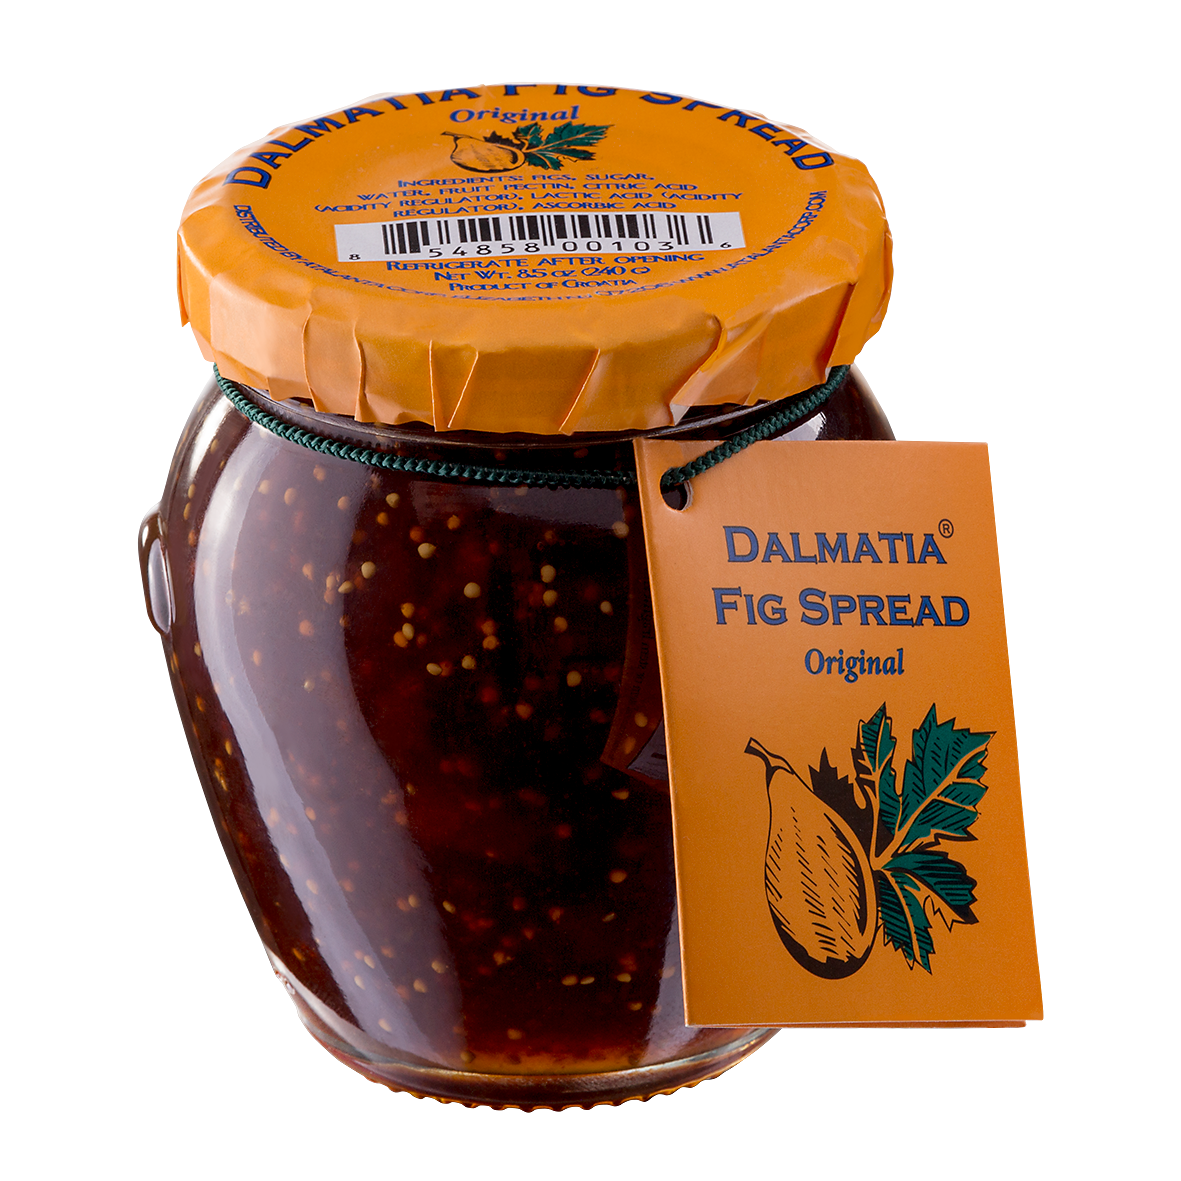 Dalmatia Fig Spread, 8.5 oz Jar